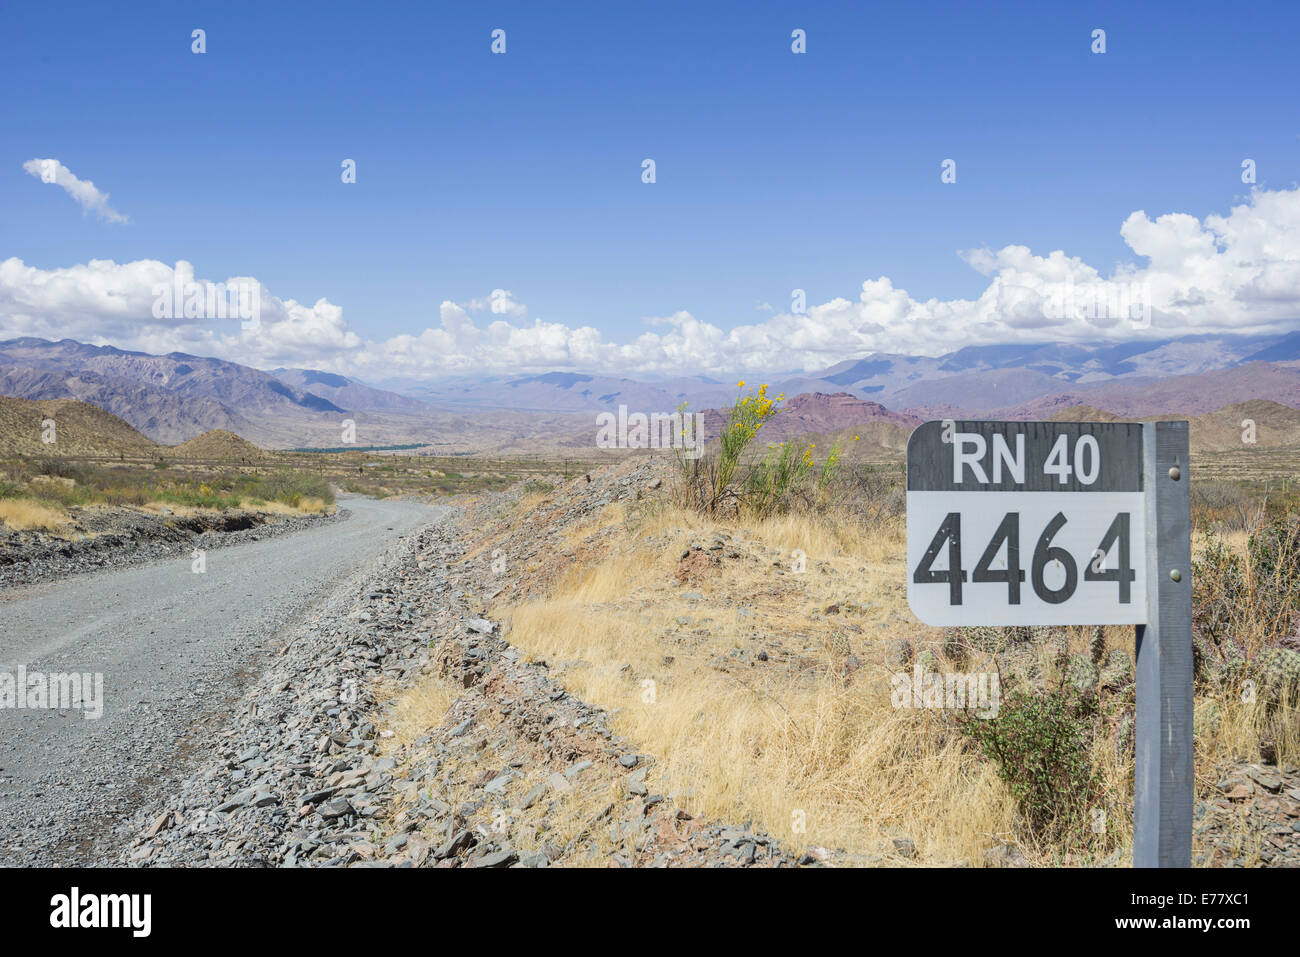 Signer avec le nom de la route sur la ruta nacional 40, ruta 40 ou rn40 avec marqueur kilomètre, près de Salta, Argentine Banque D'Images